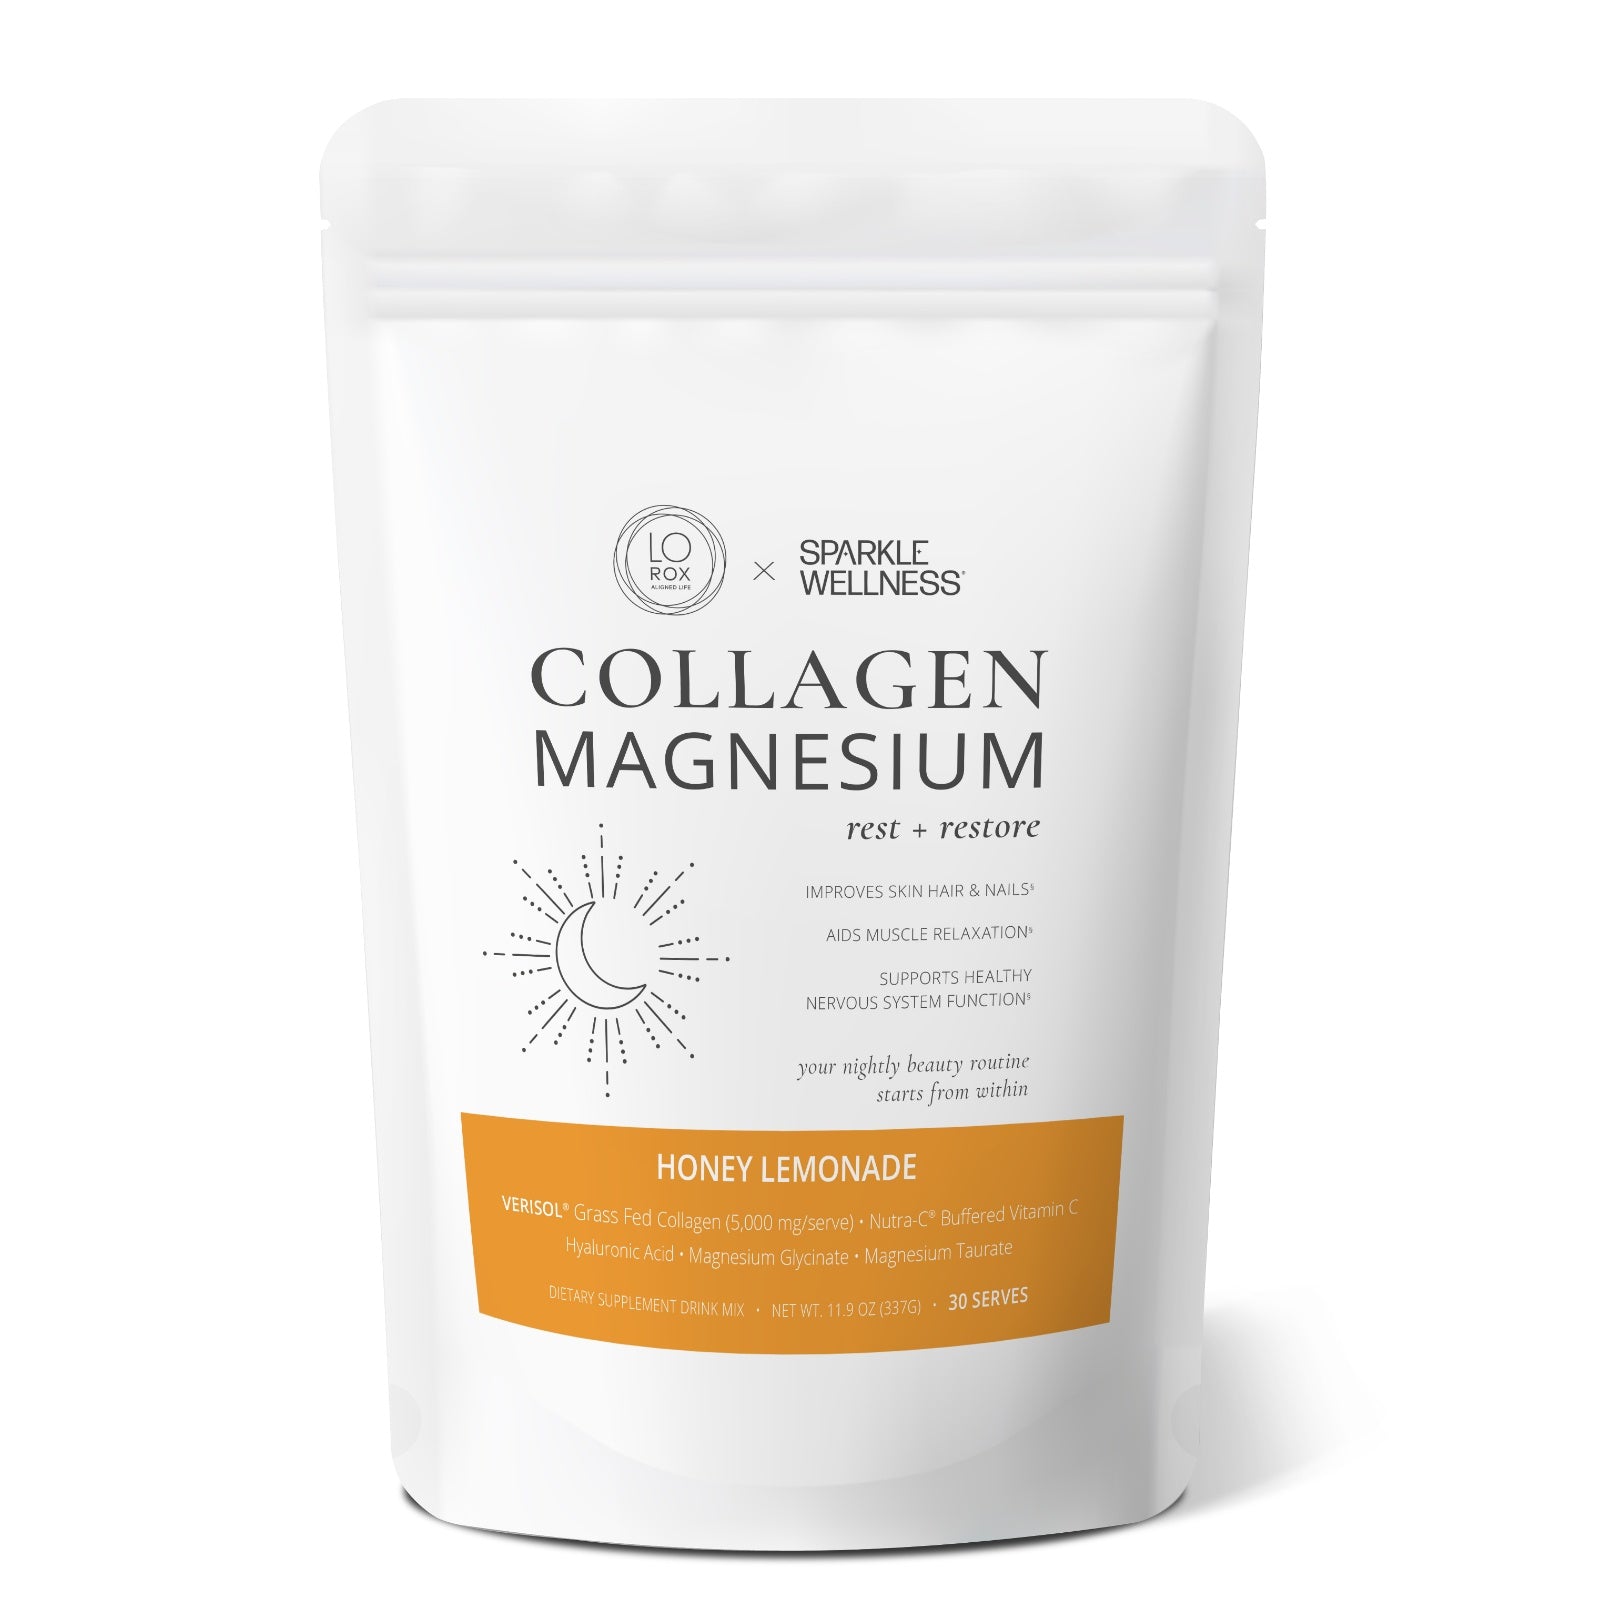 Collagen Magnesium Honey Lemonade, 44336898965722